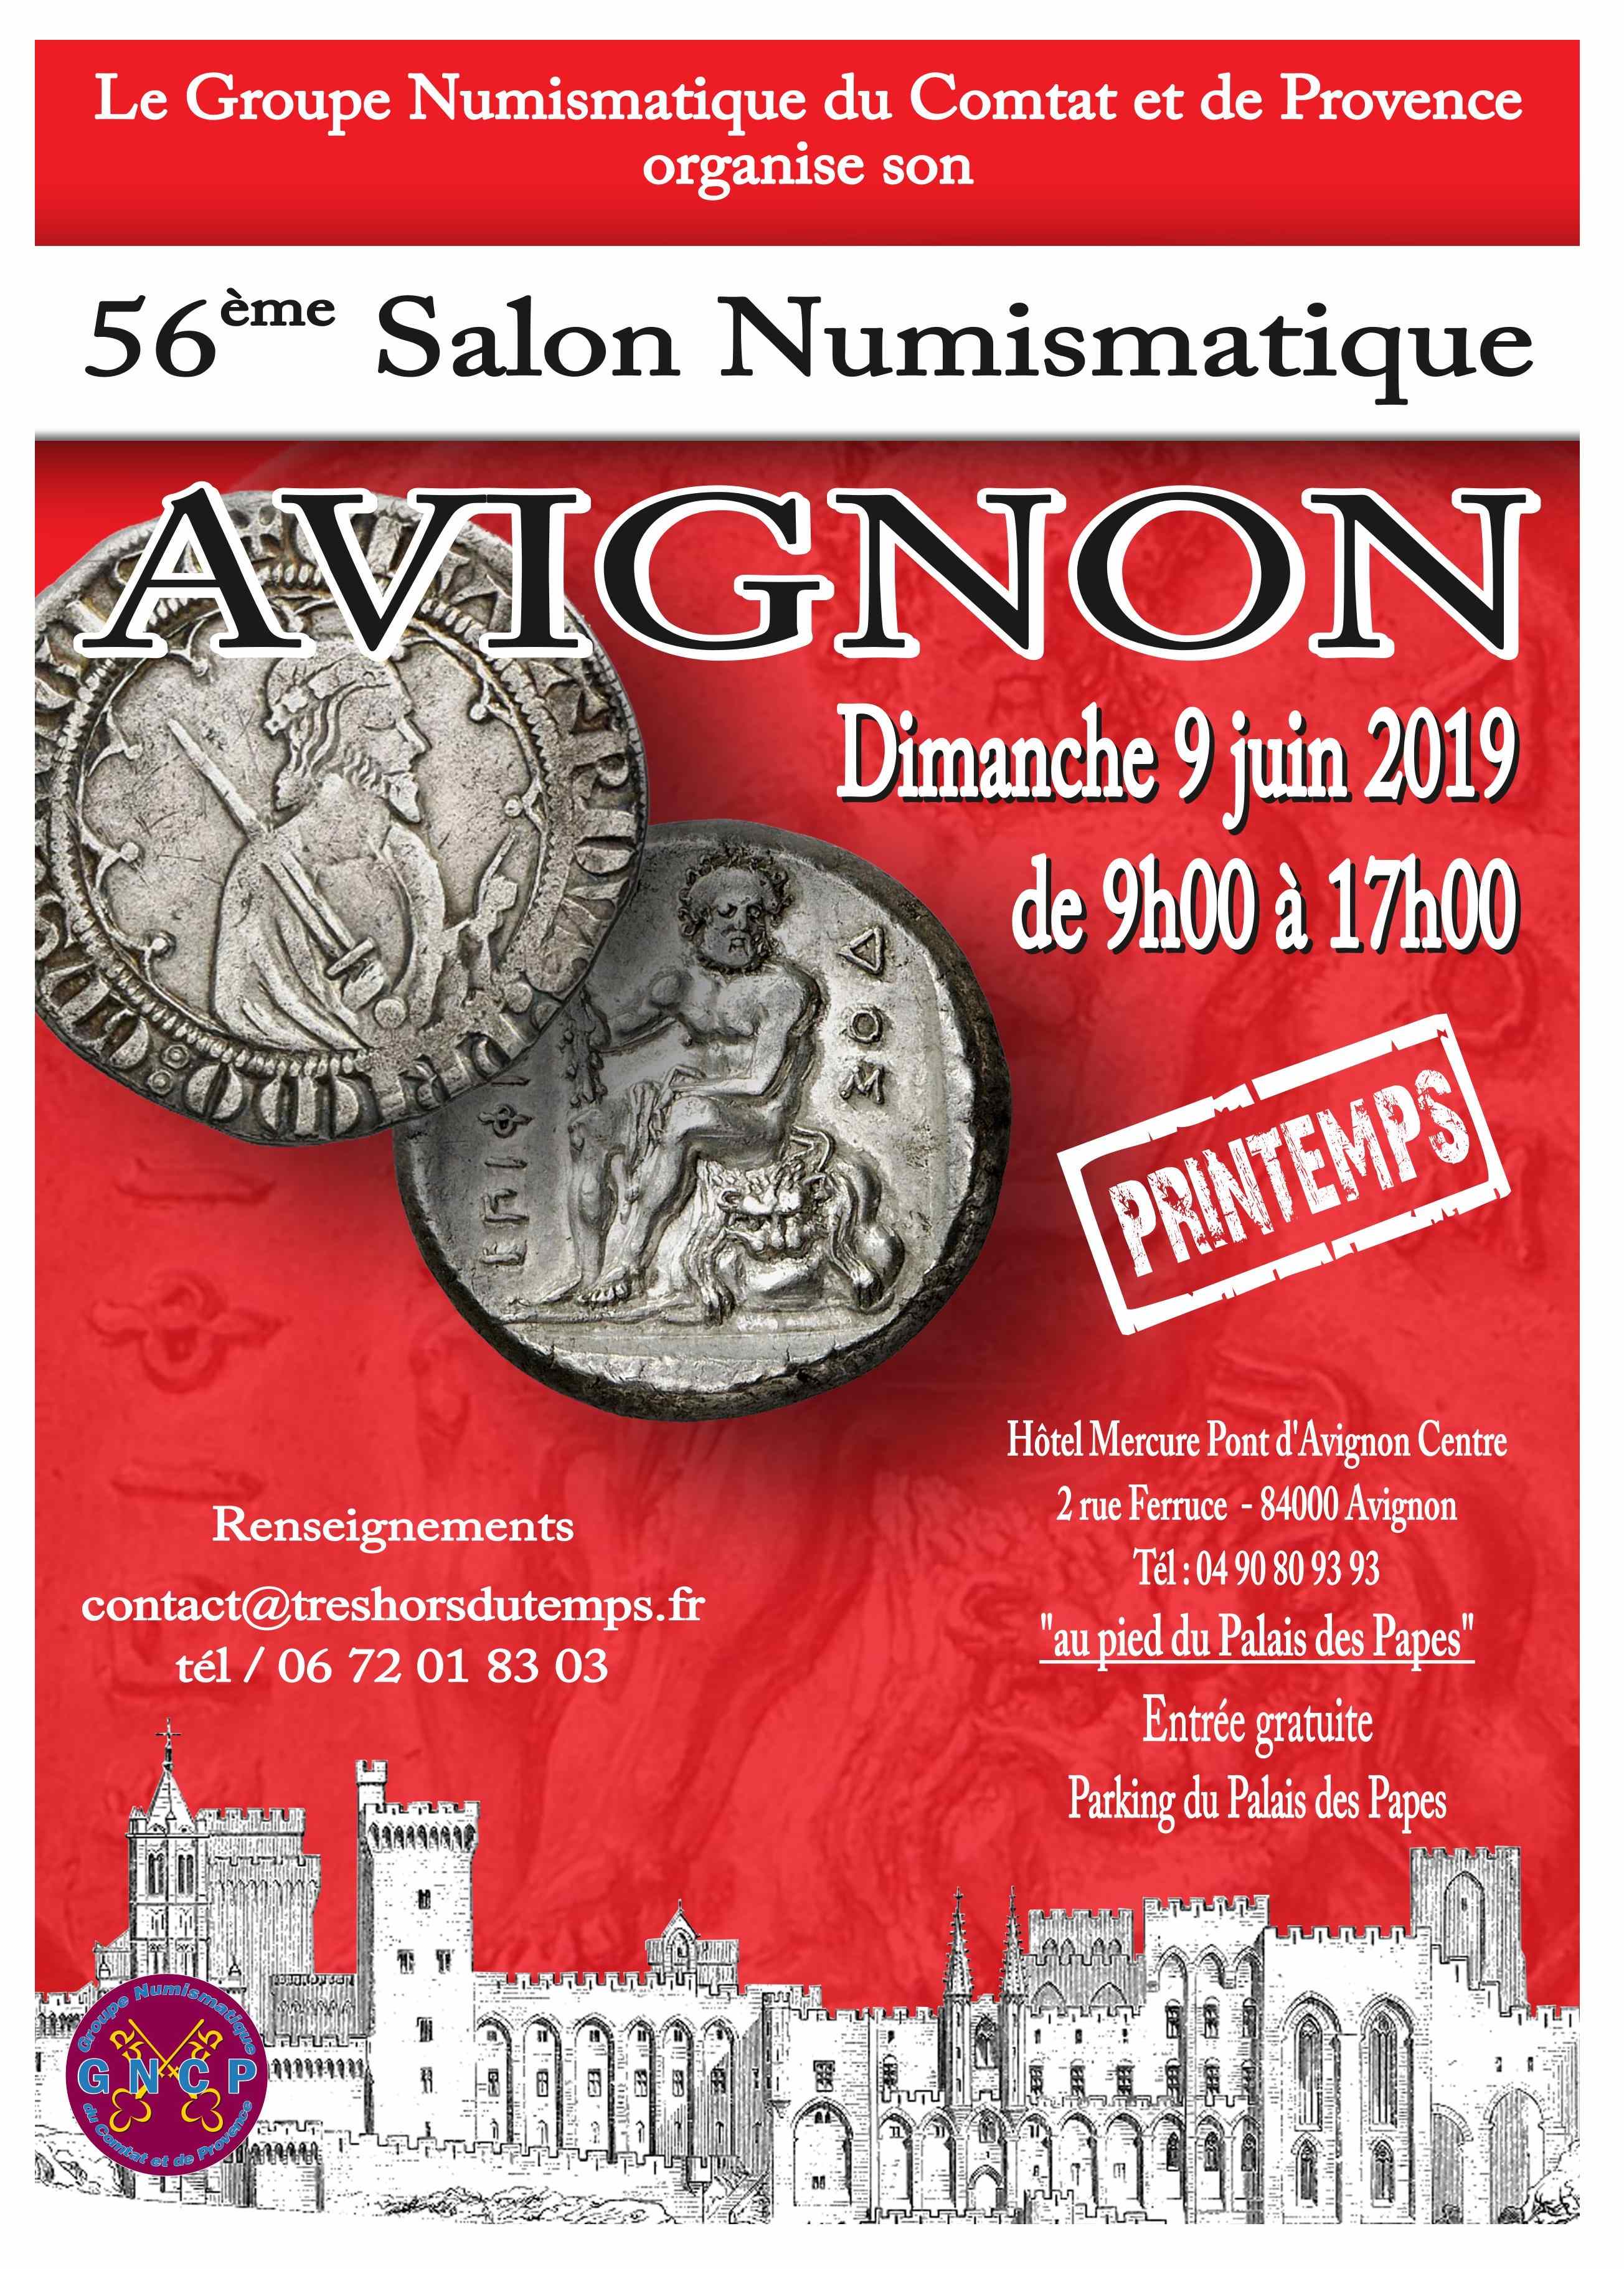 Avignon_2019.jpg - 661,37 kB